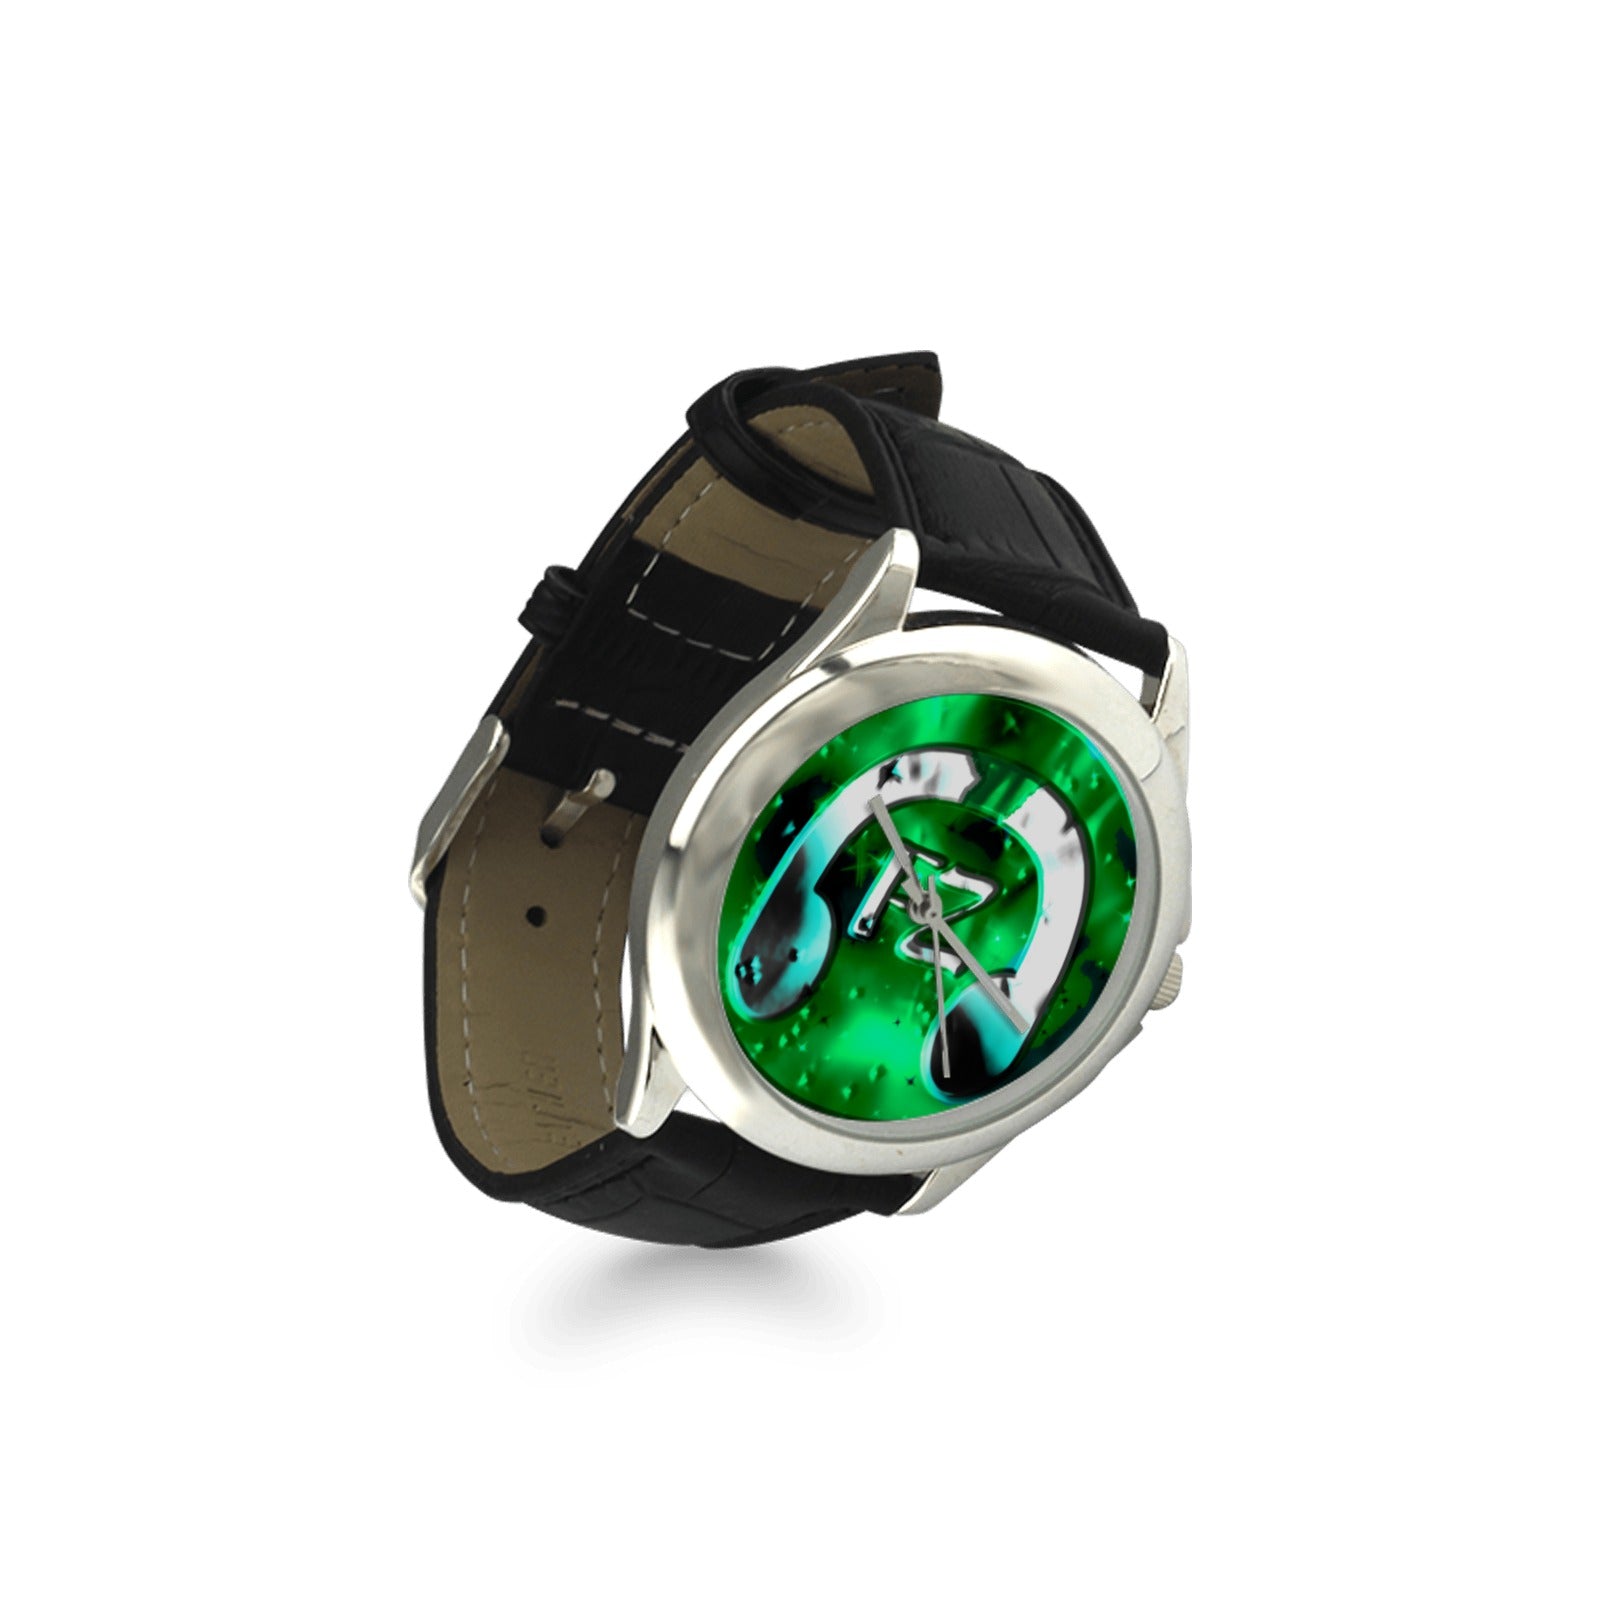 fz women's watch - green women's classic leather strap watch (model 203)